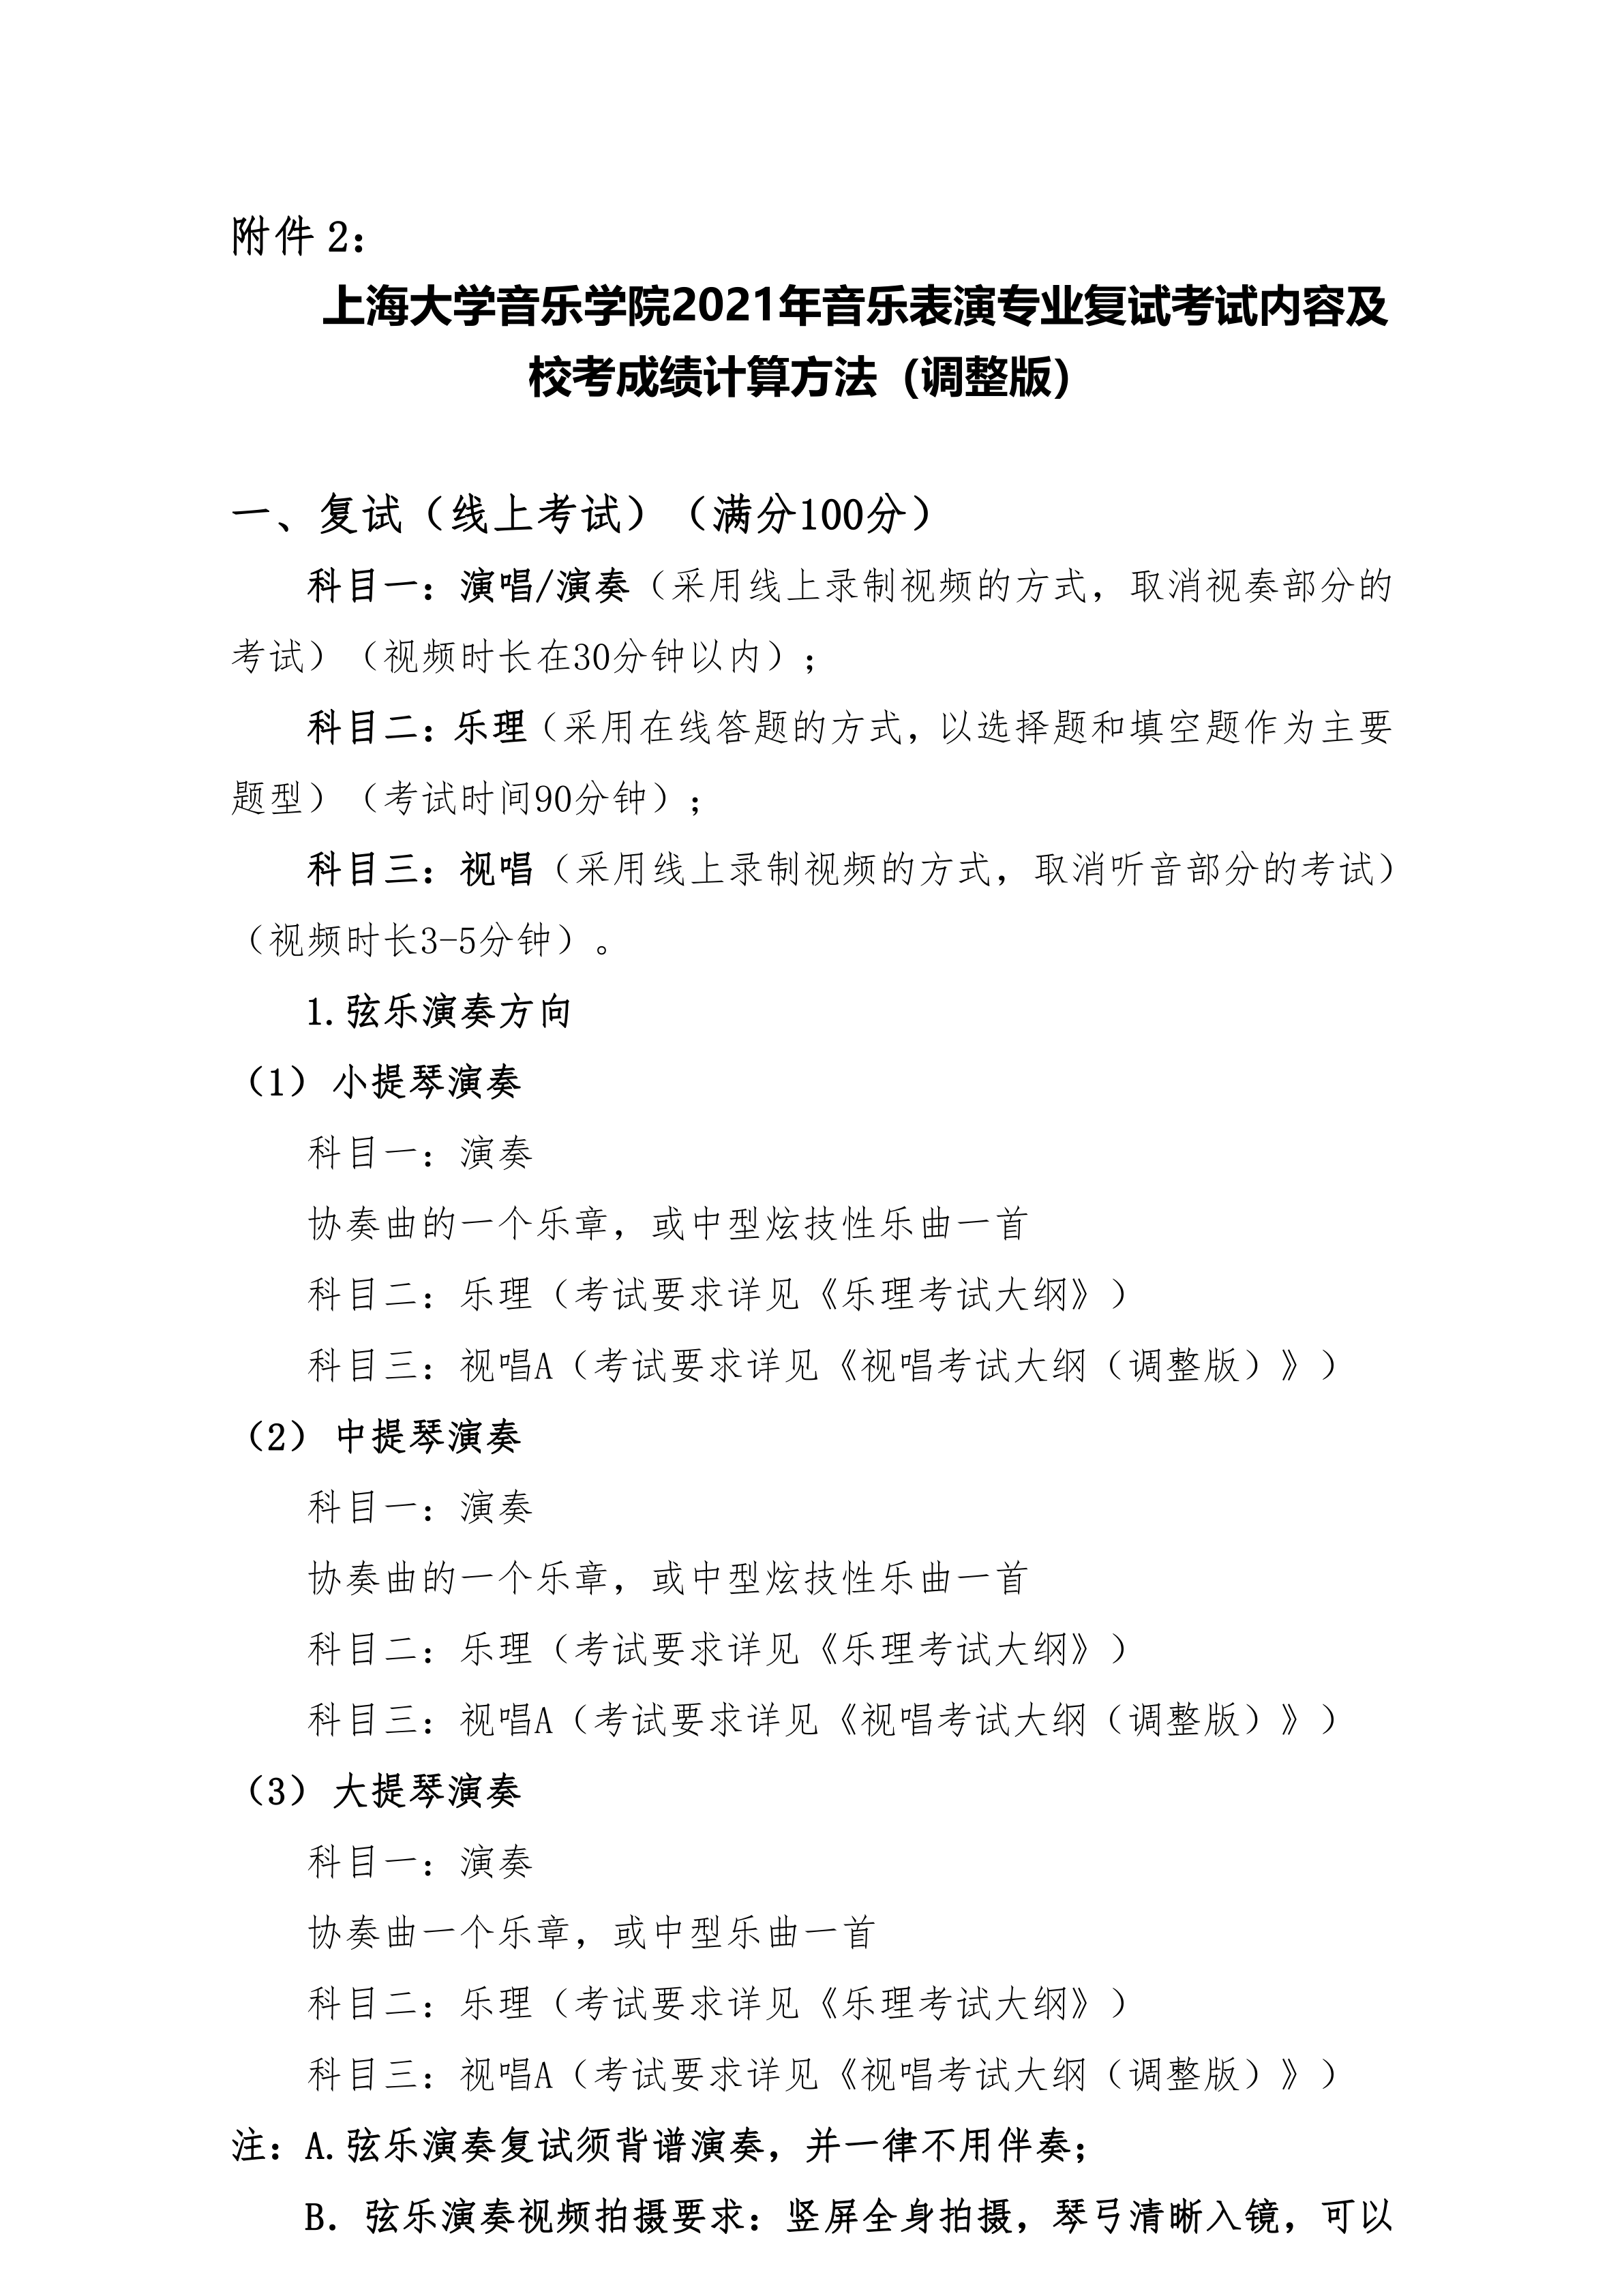 附件2：+《上海大学音乐学院2021年音乐表演专业复试考试内容及校考成绩计算方法（调整版）》_1.png